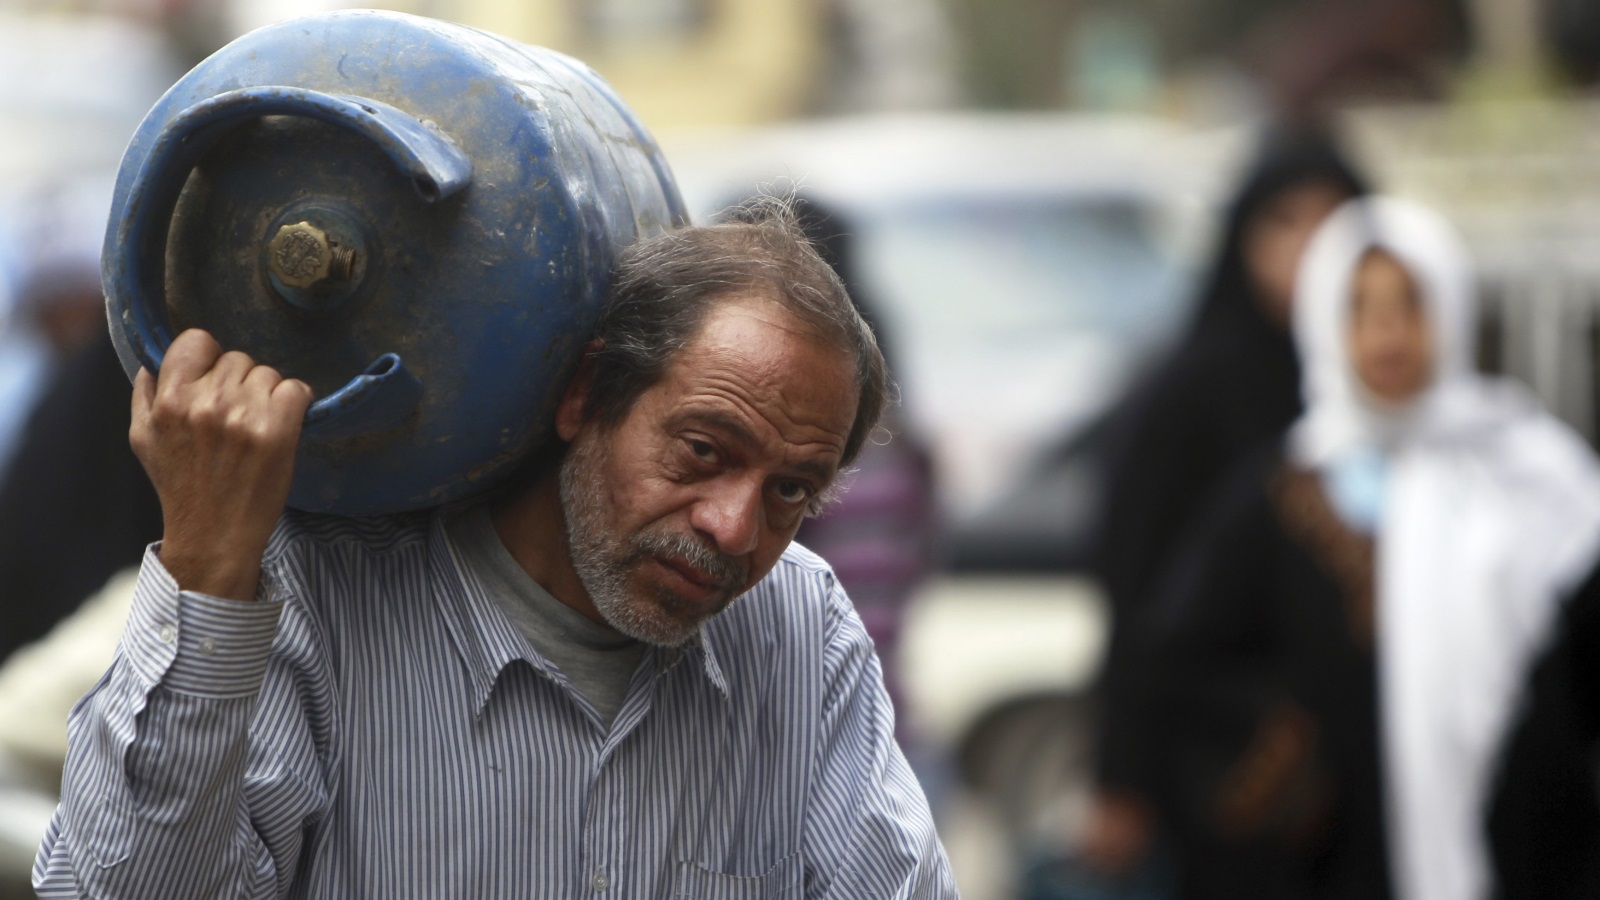 الحروب والنزاعات السياسية من أهم أسباب الفقر في العالم العربي (رويترز)